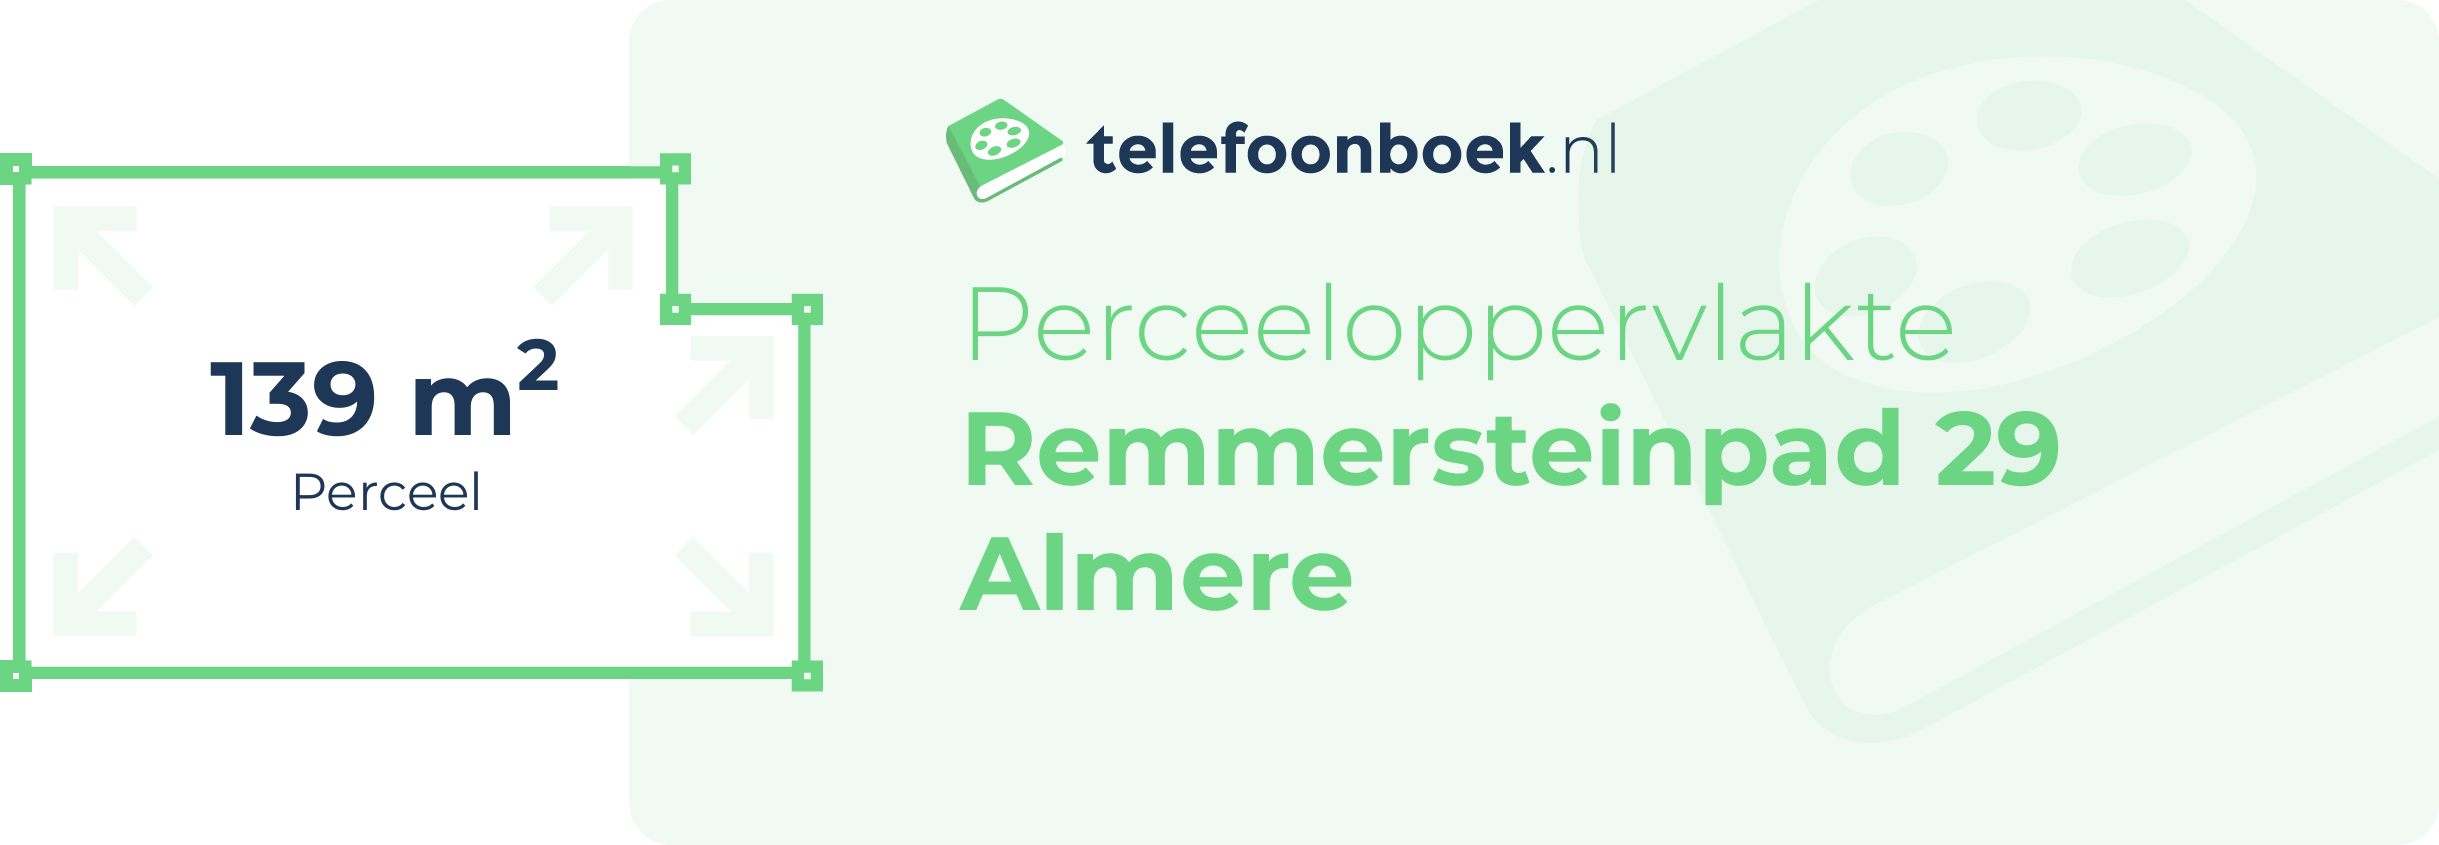 Perceeloppervlakte Remmersteinpad 29 Almere